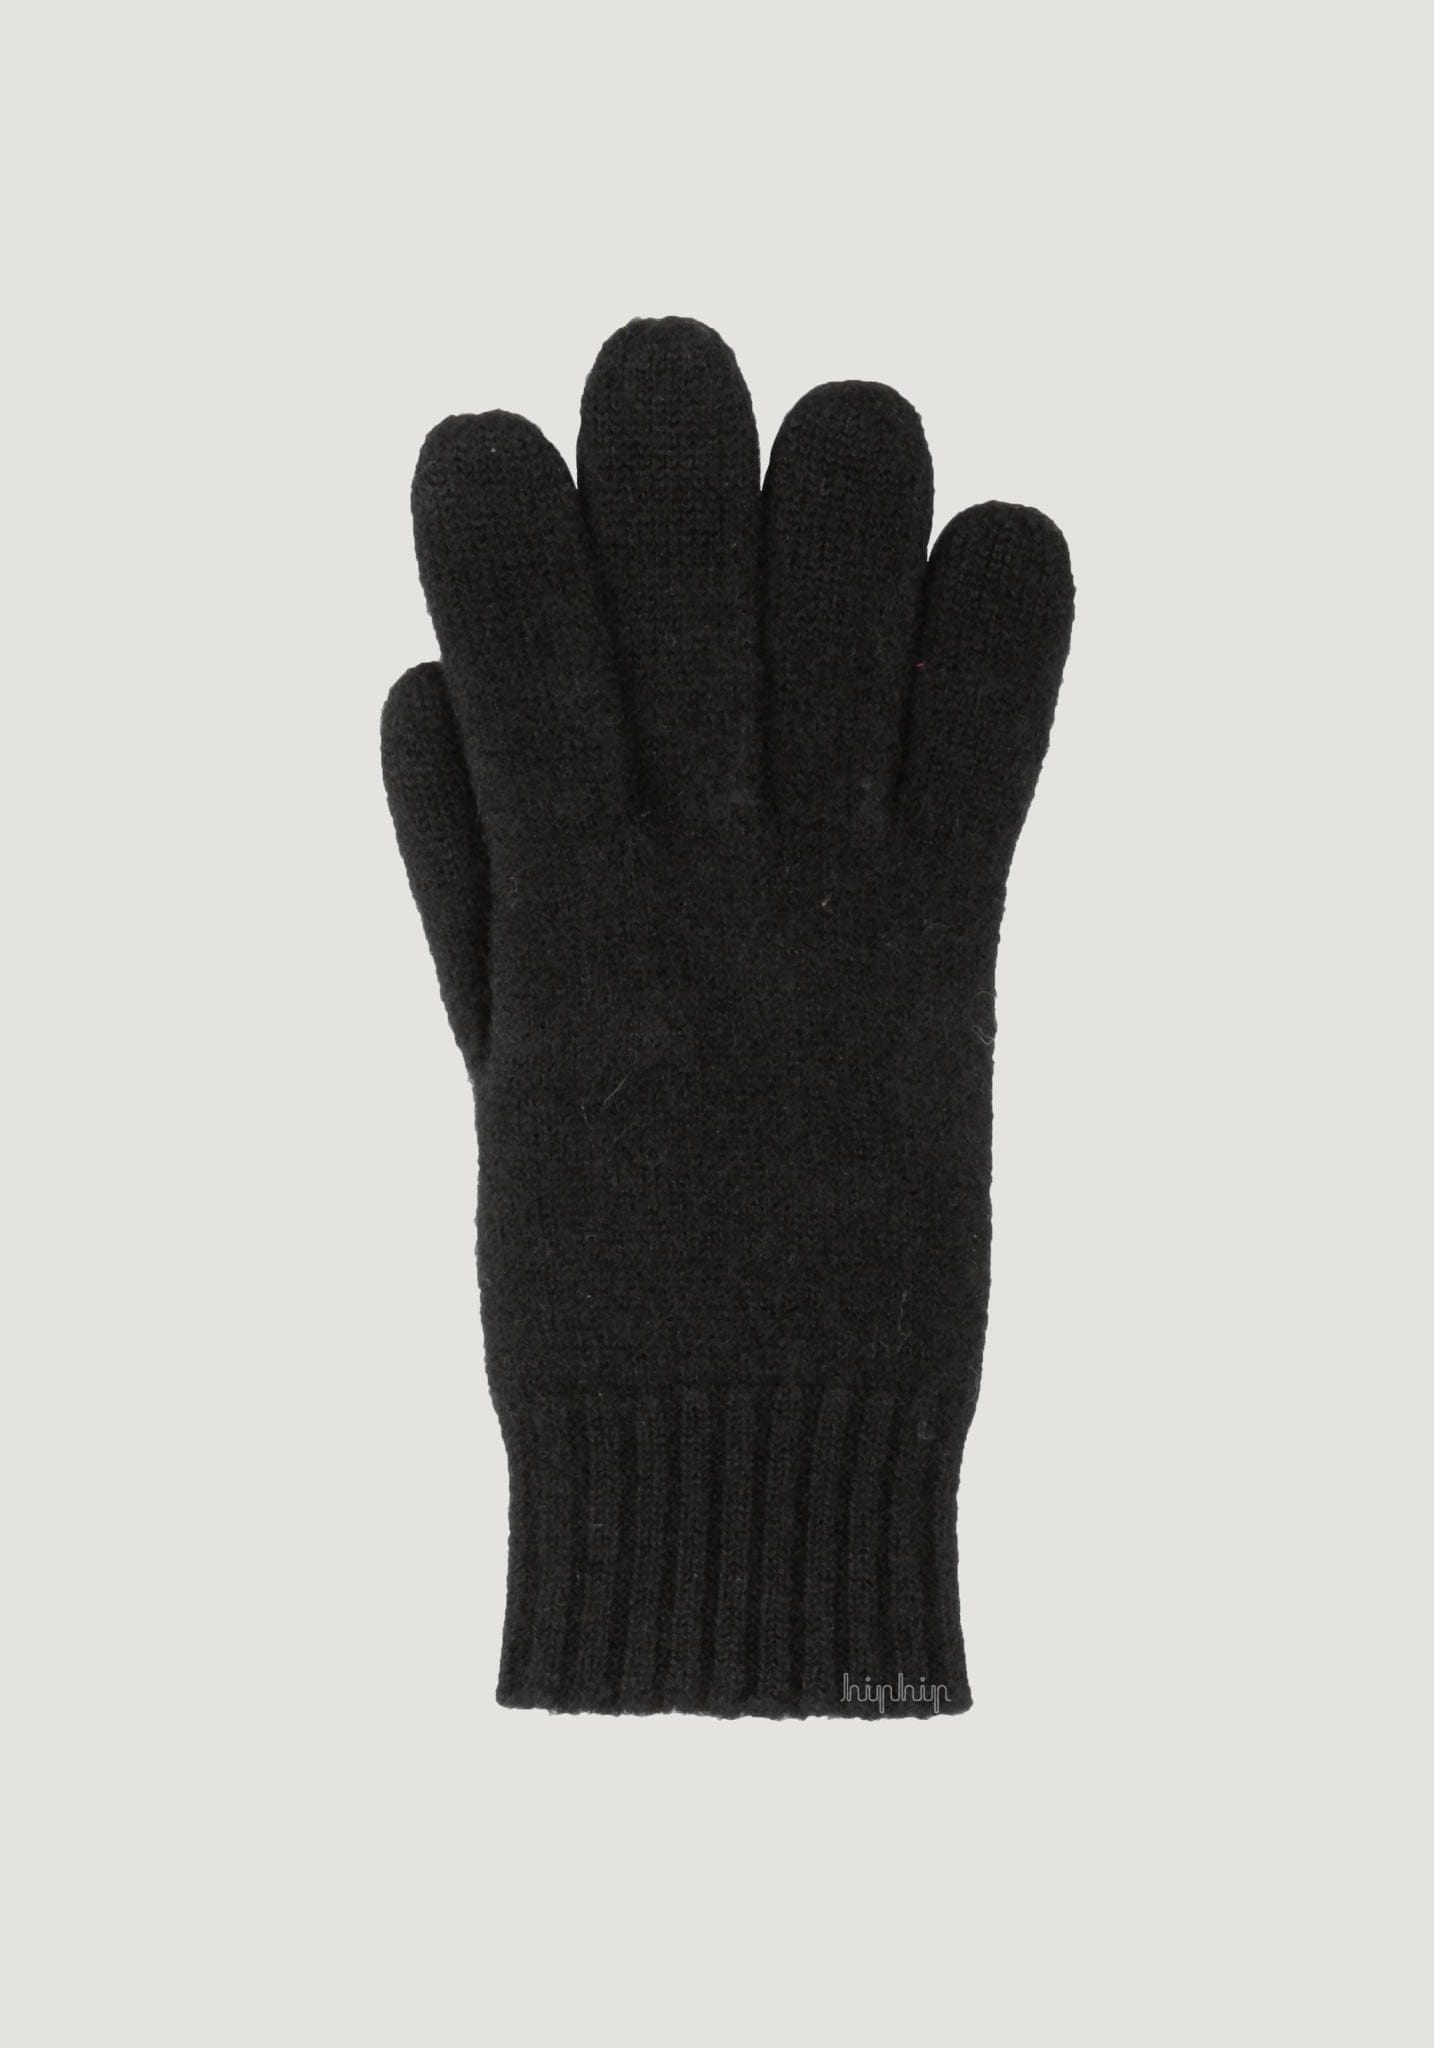 Mănuși bărbați din lână fiartă- Black Joha Man HipHip.ro